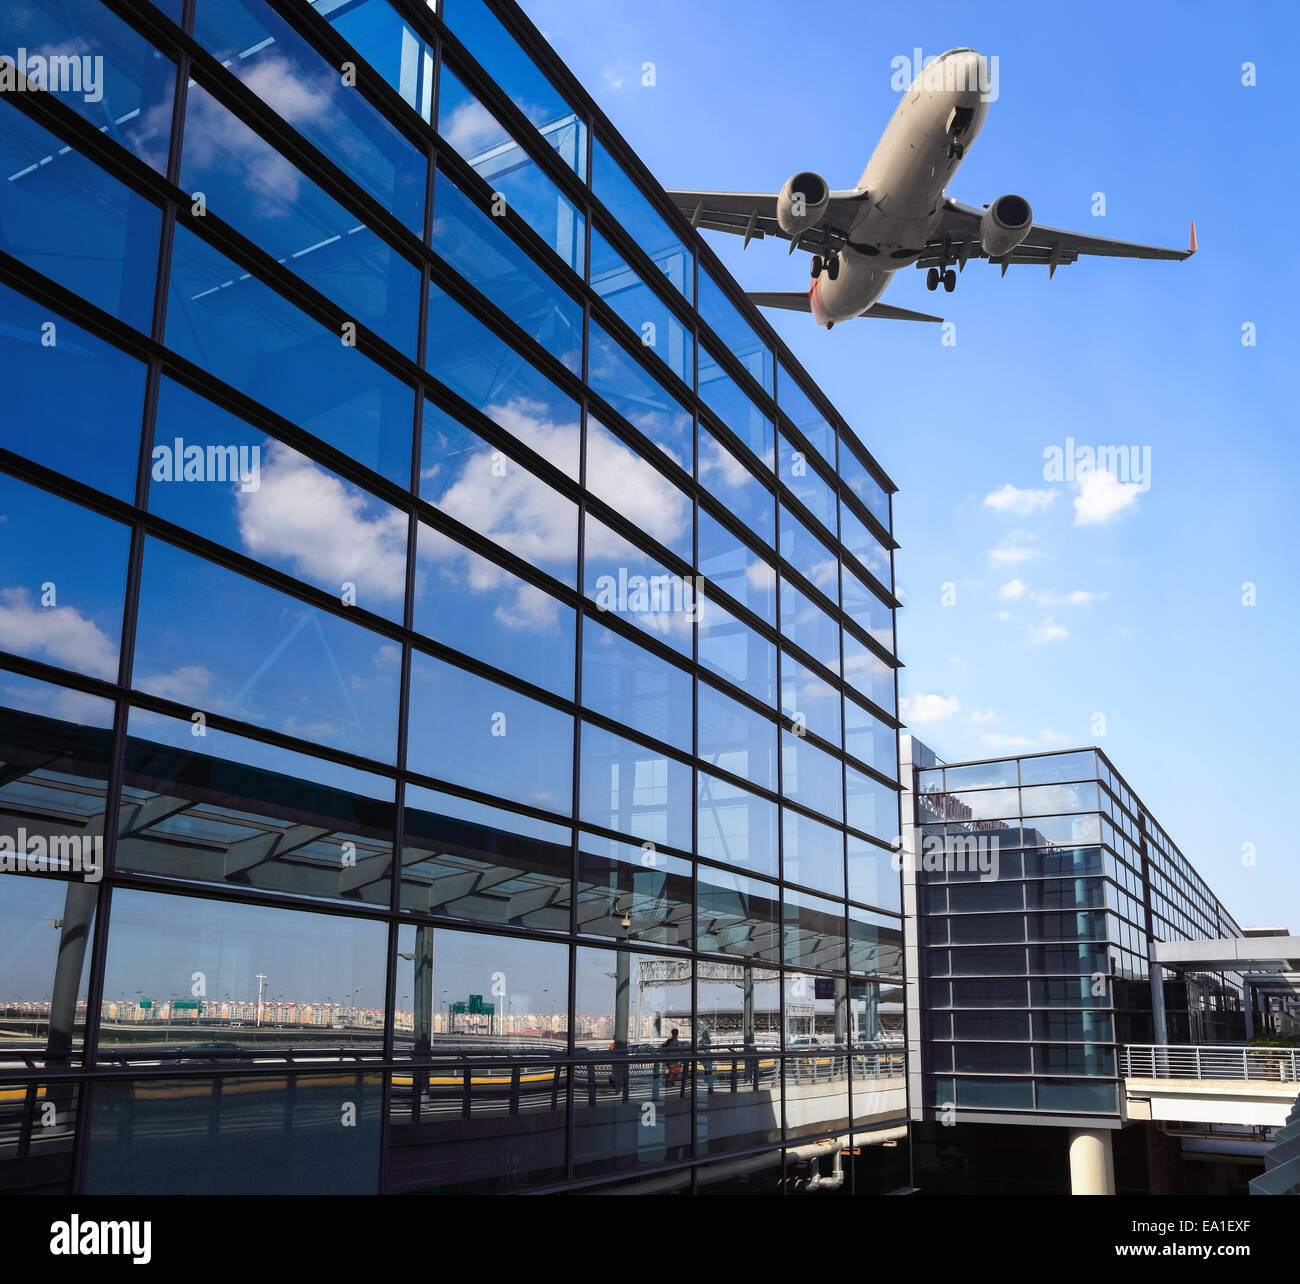 Flugzeug und Flughafen-terminal-Gebäude Stockfoto